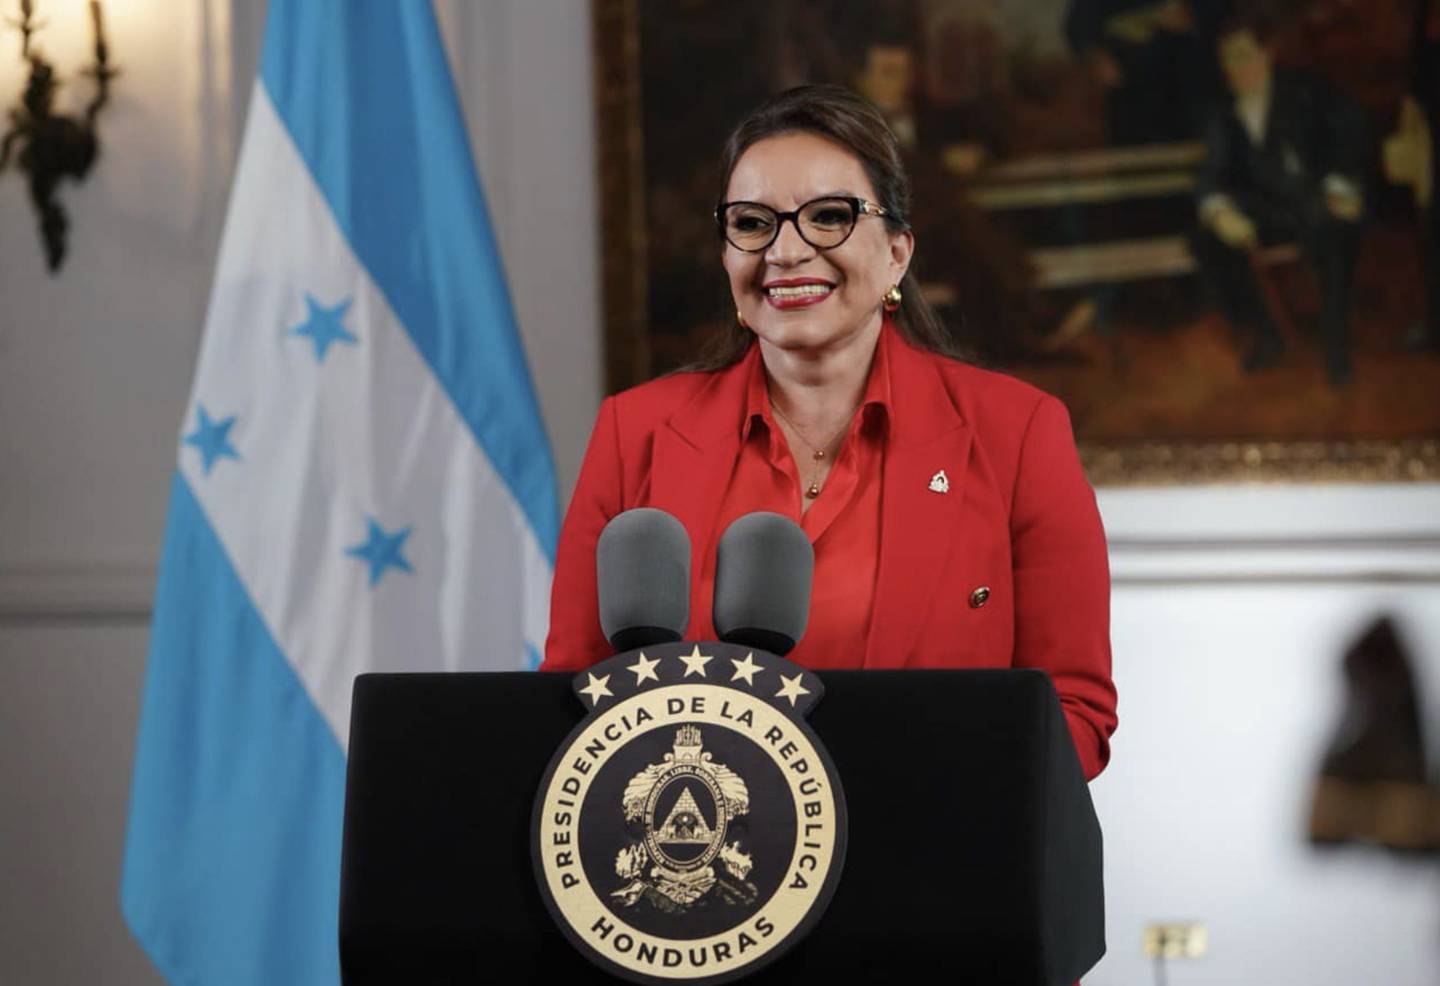 La presidenta Xiomara Castro de Zelaya dio en cadena nacional un informe de los primeros 100 días de su mandato.